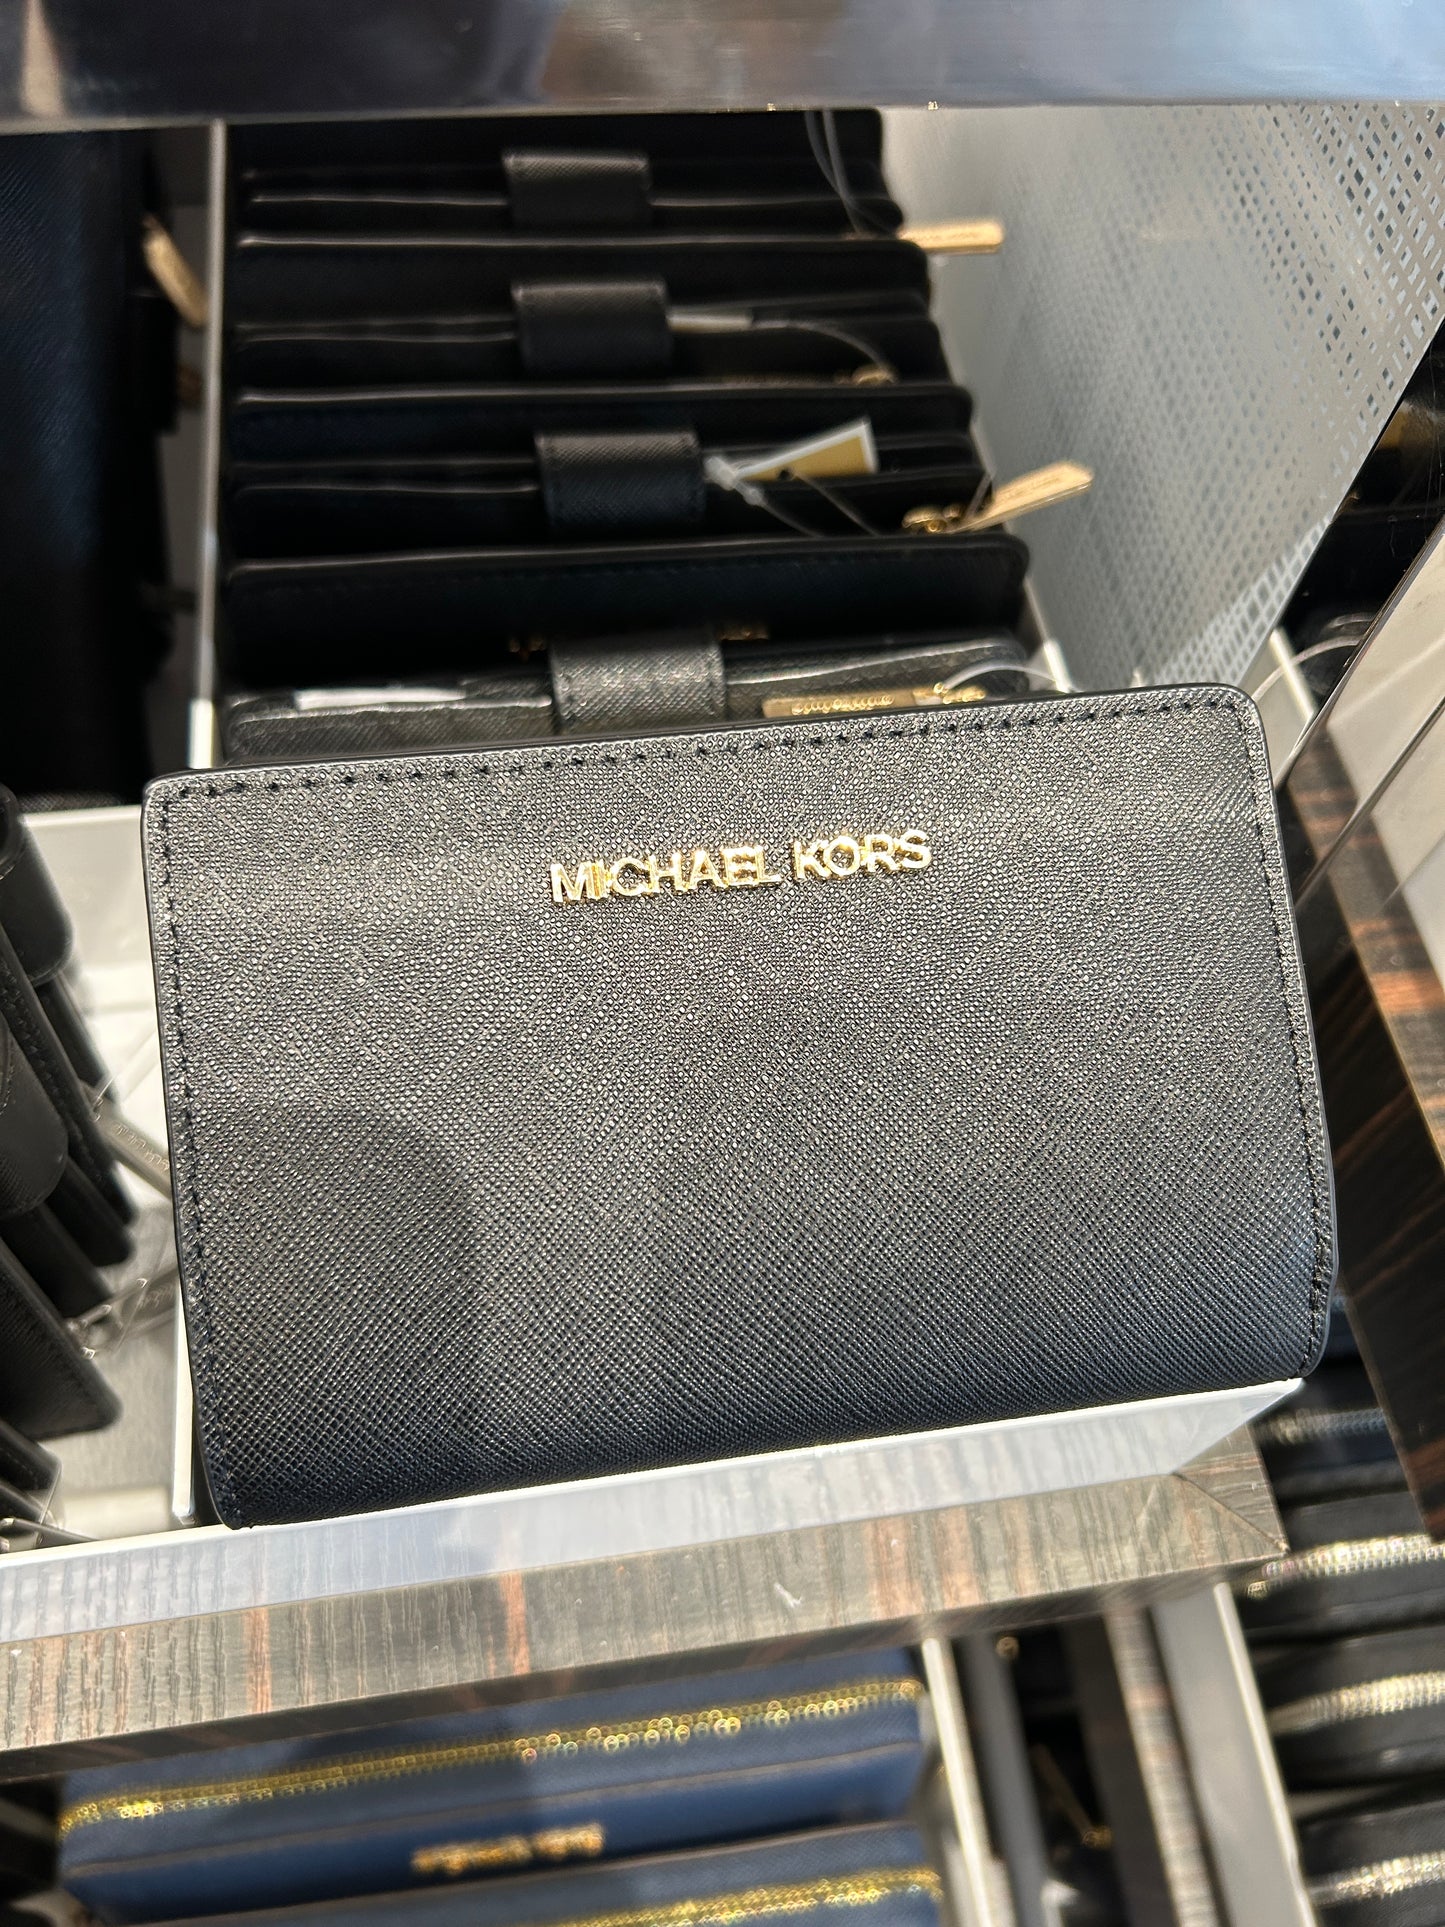 Michael Kors Jet Set Travel Medium Bifold Zip Corner Wallet In Saffiano Black Gold